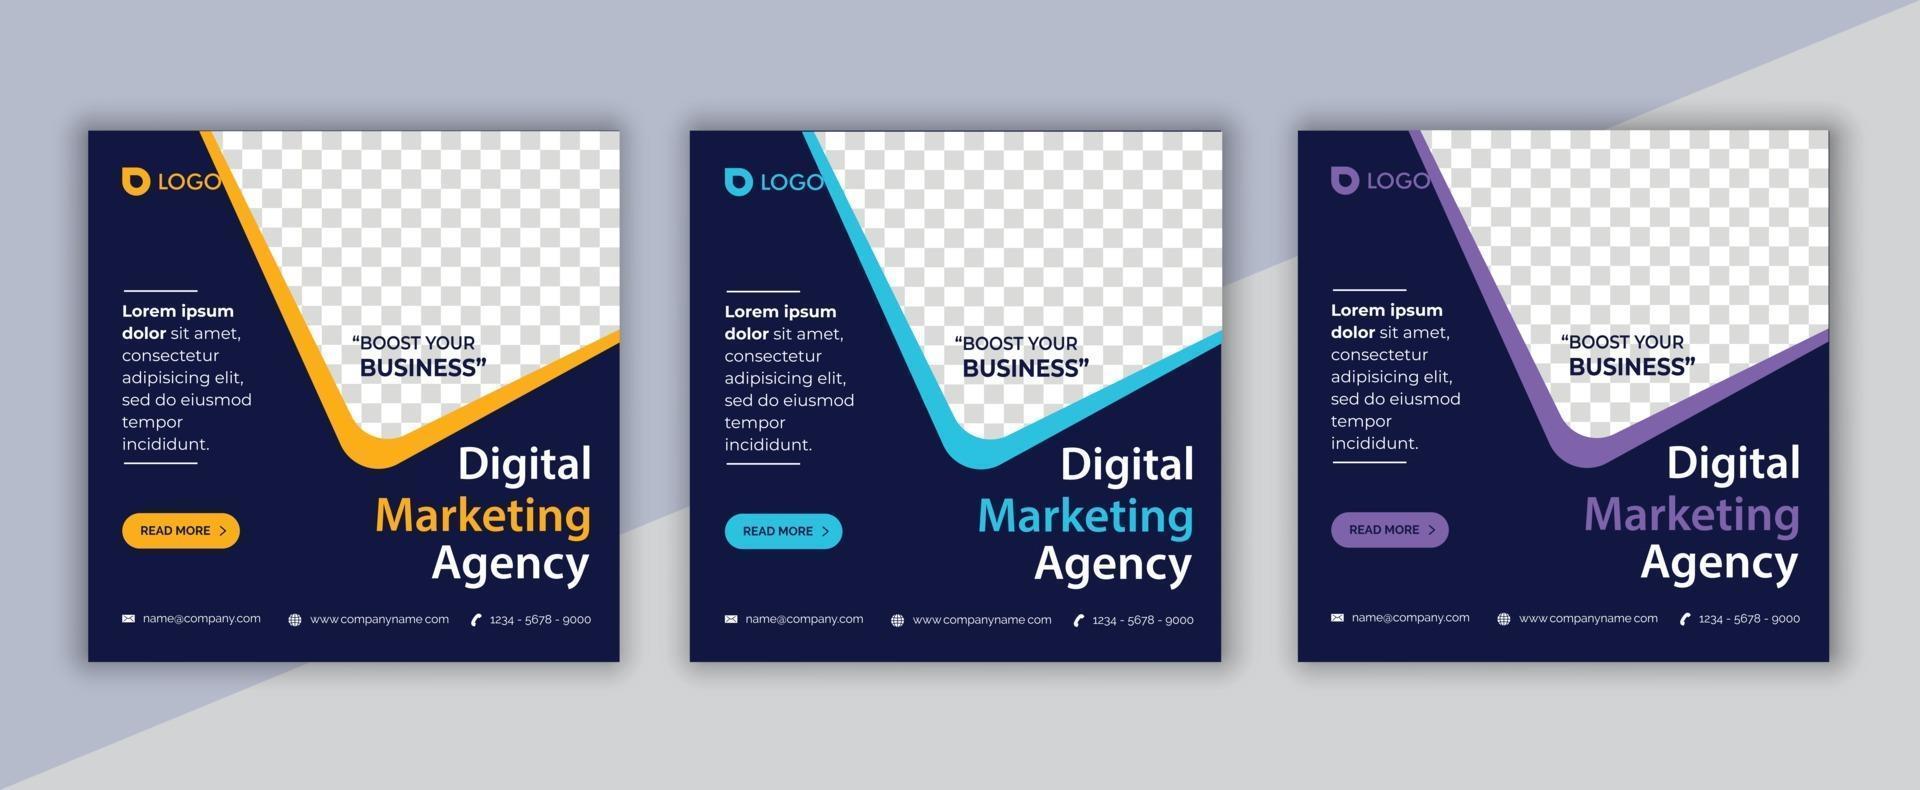 digital marketing social media post, business marketing flyer design vector